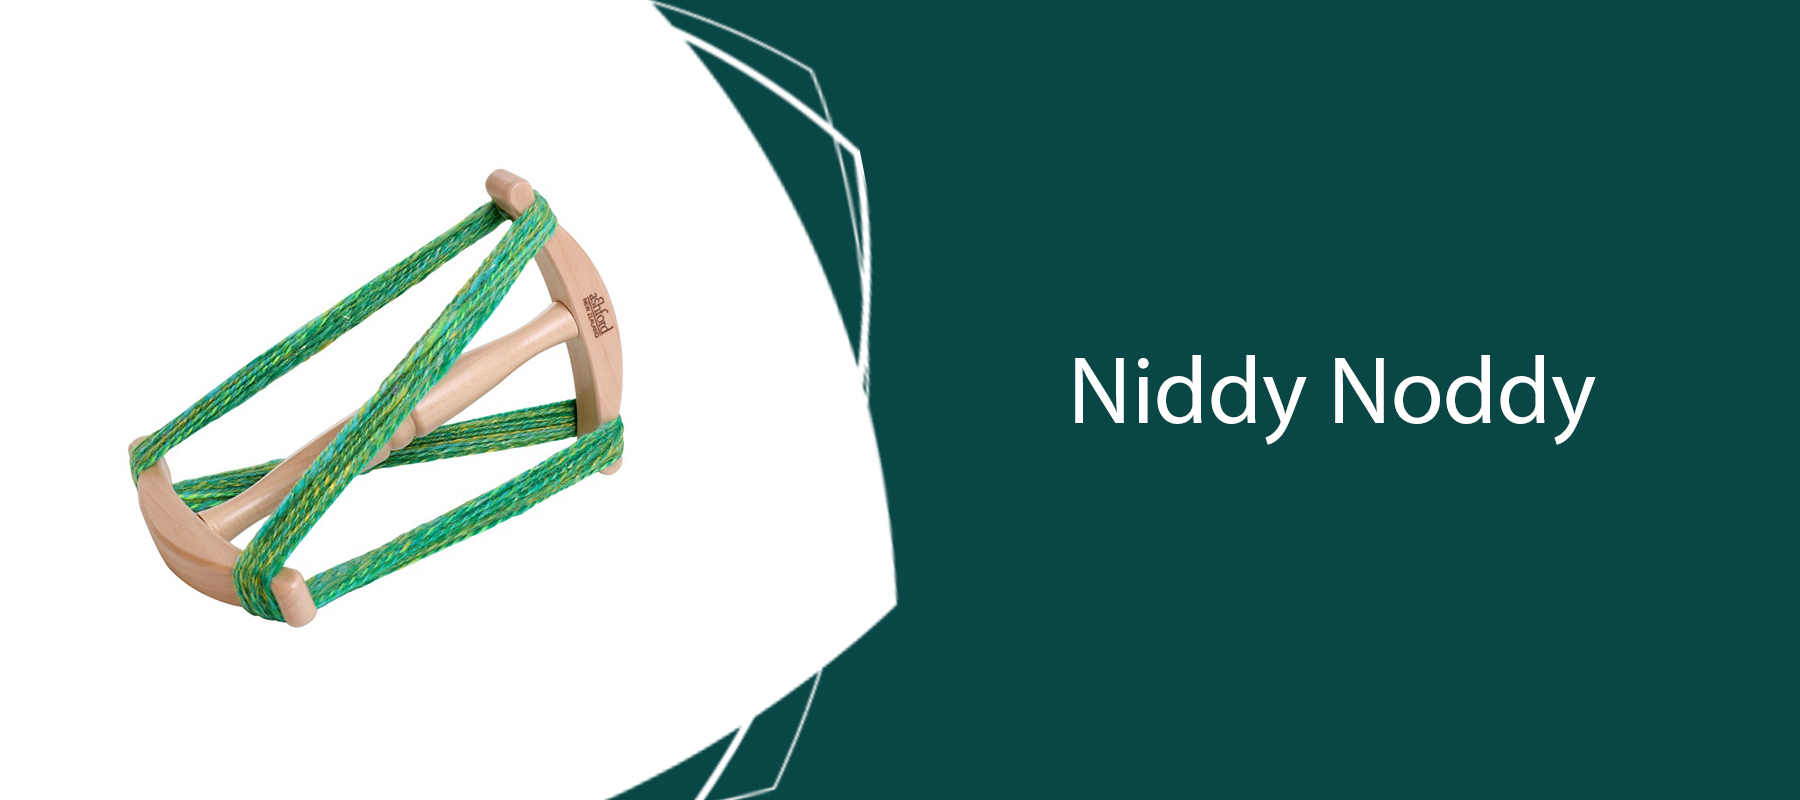 Niddy Noddy Kit by Ashford